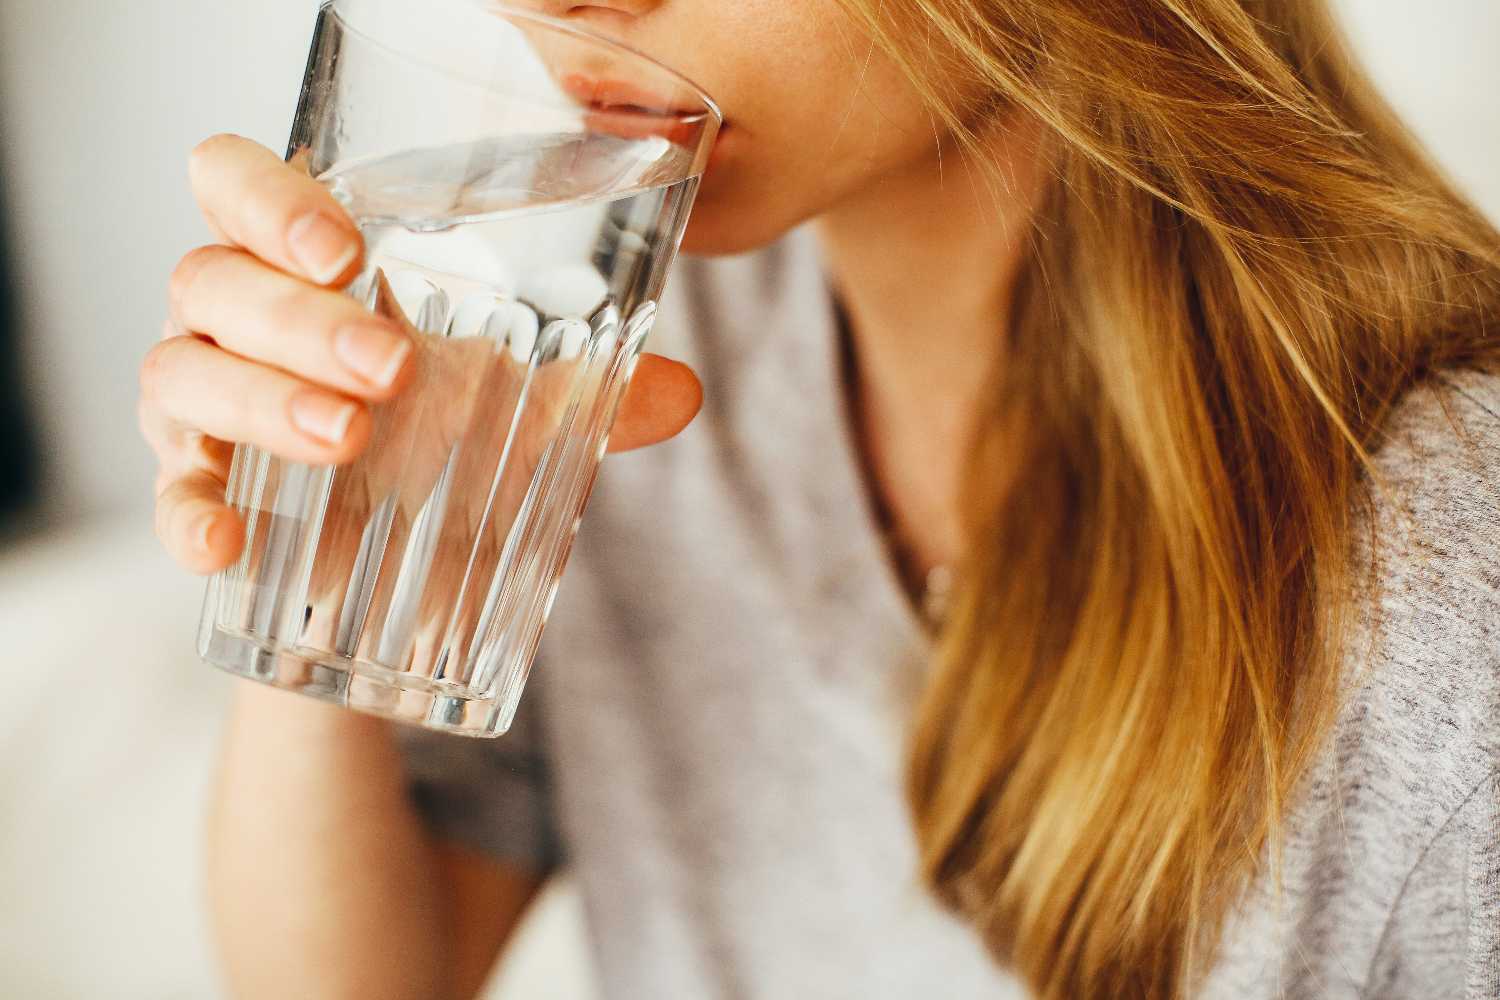 Los beneficios de beber agua cada día